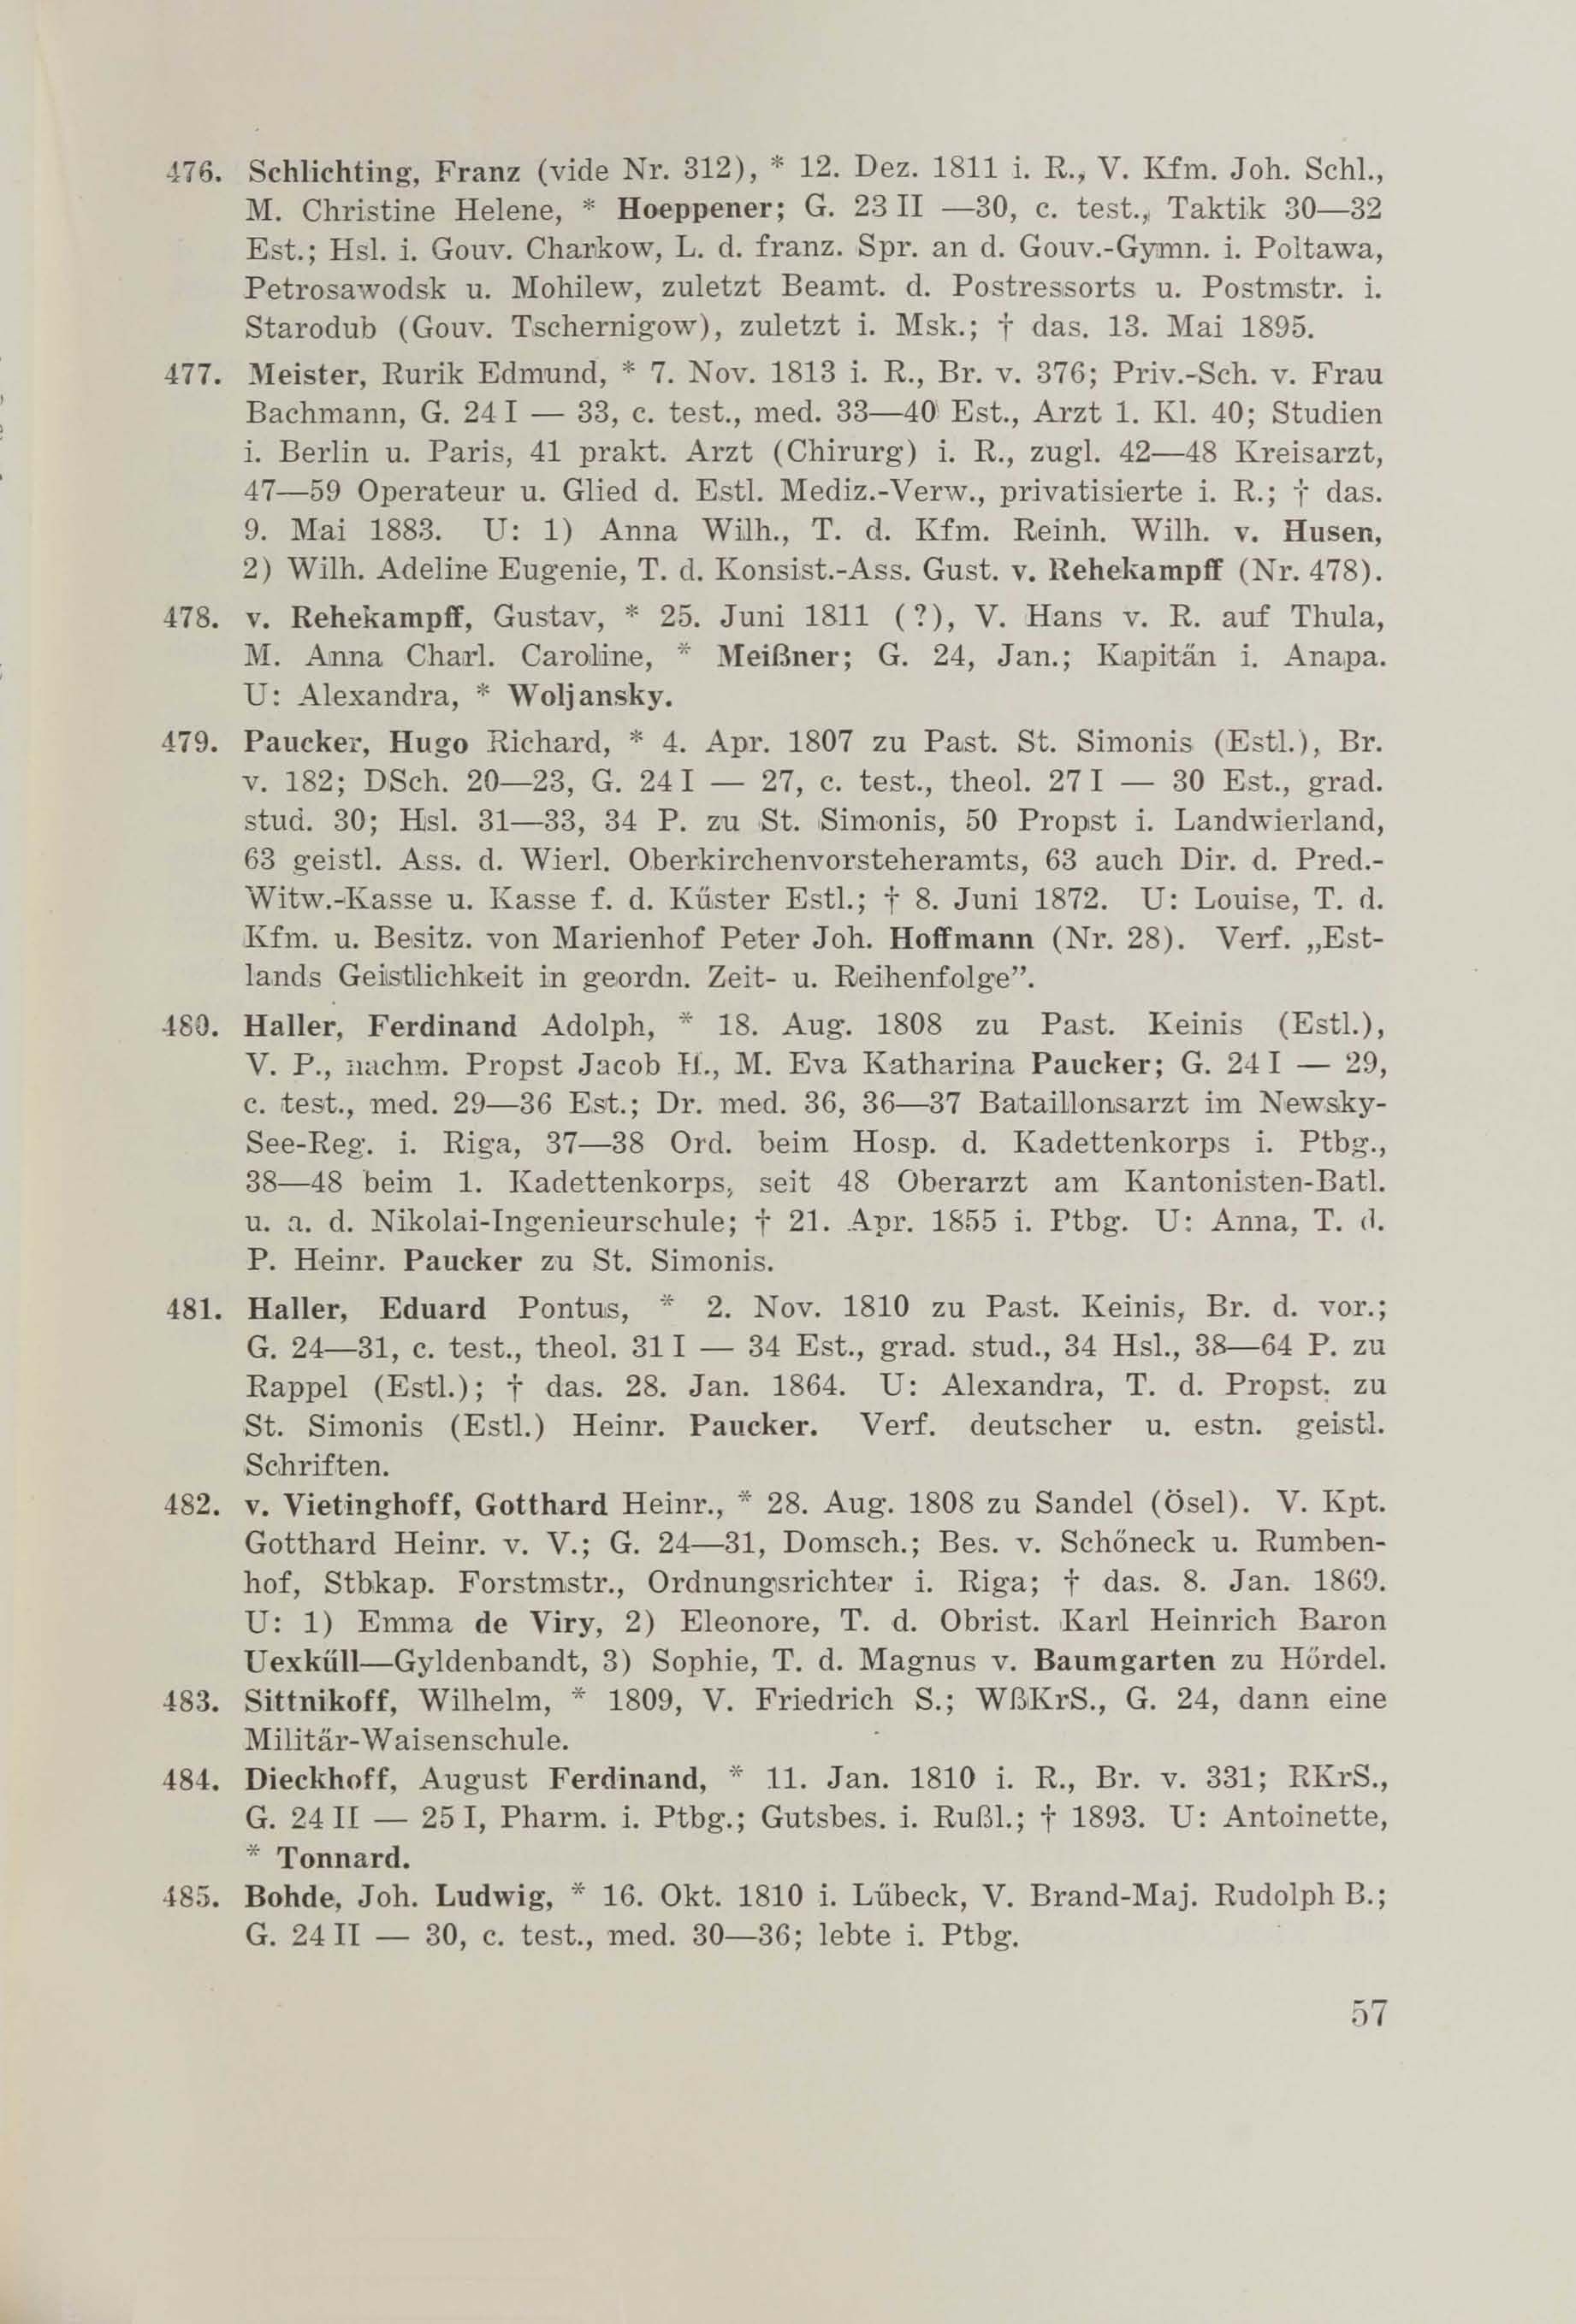 Schüler-Verzeichnis des Revalschen Gouvernements-Gymnasiums 1805–1890 (1931) | 67. (57) Main body of text